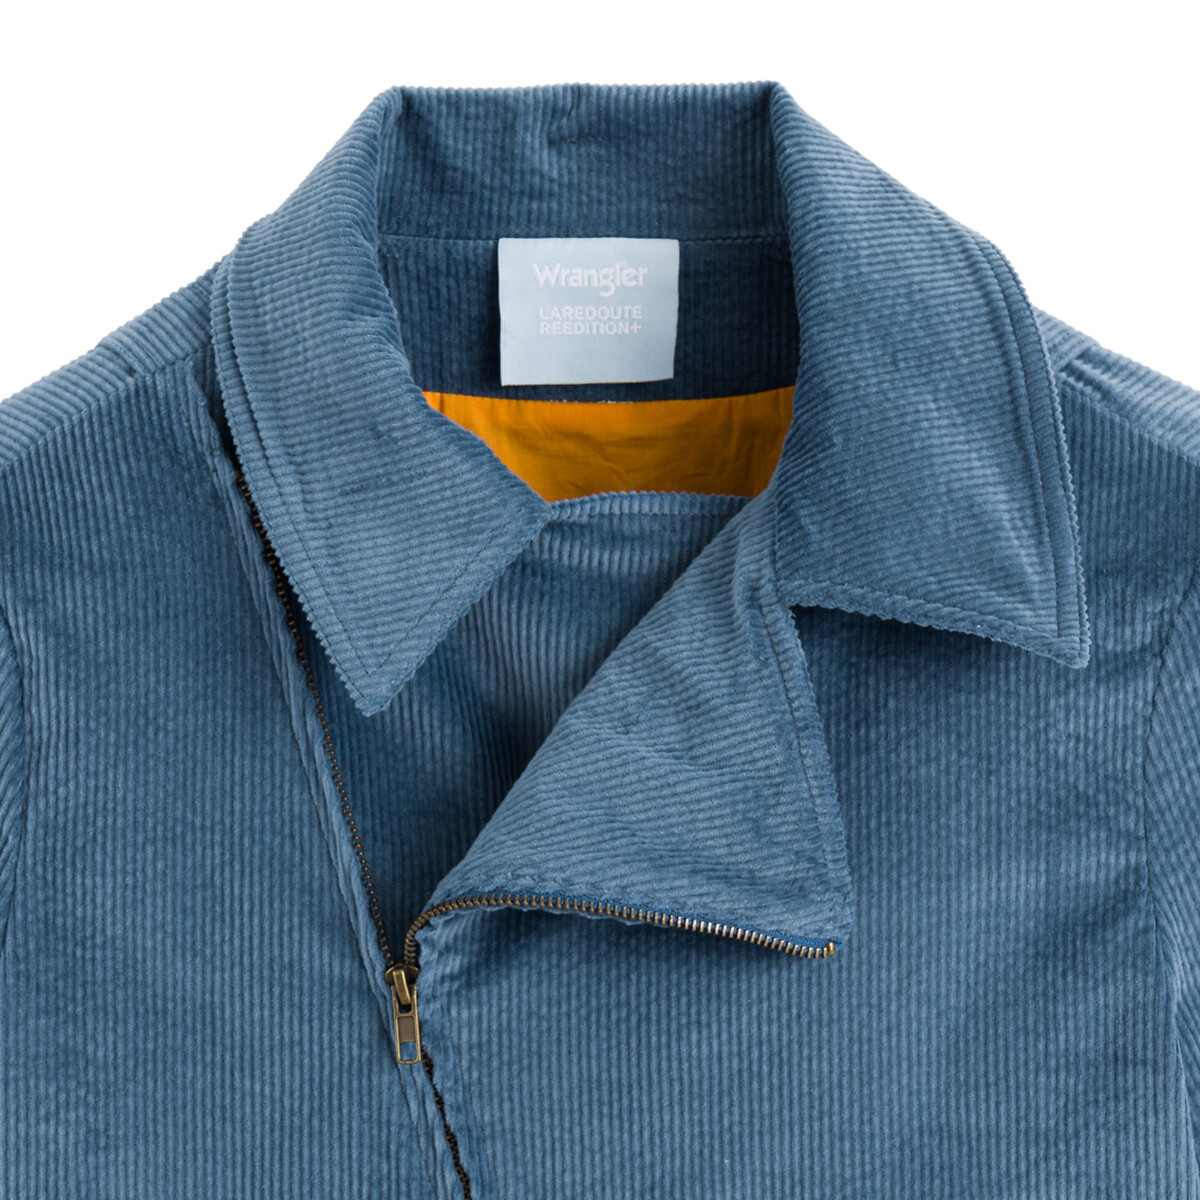 Куртка WRANGLER x LA REDOUTE На молнии из вельвета 44 (FR) - 50 (RUS) синий, размер 44 (FR) - 50 (RUS) На молнии из вельвета 44 (FR) - 50 (RUS) синий - фото 2